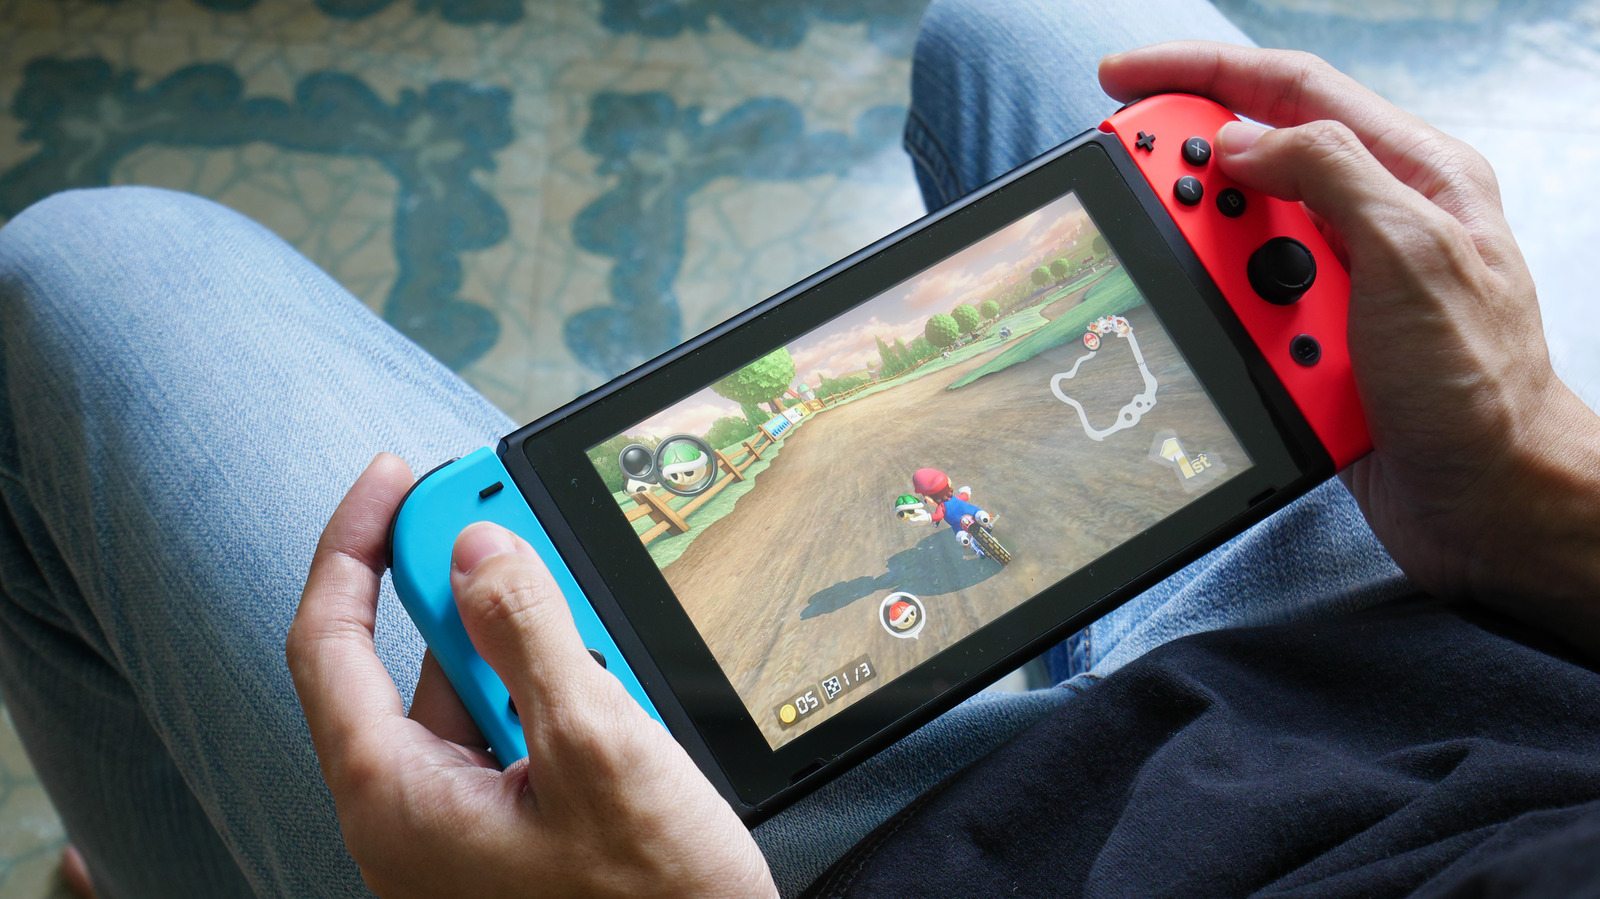 ¿Qué es un Flash Cart de Nintendo Switch? ¿Puede provocar que te prohíban?